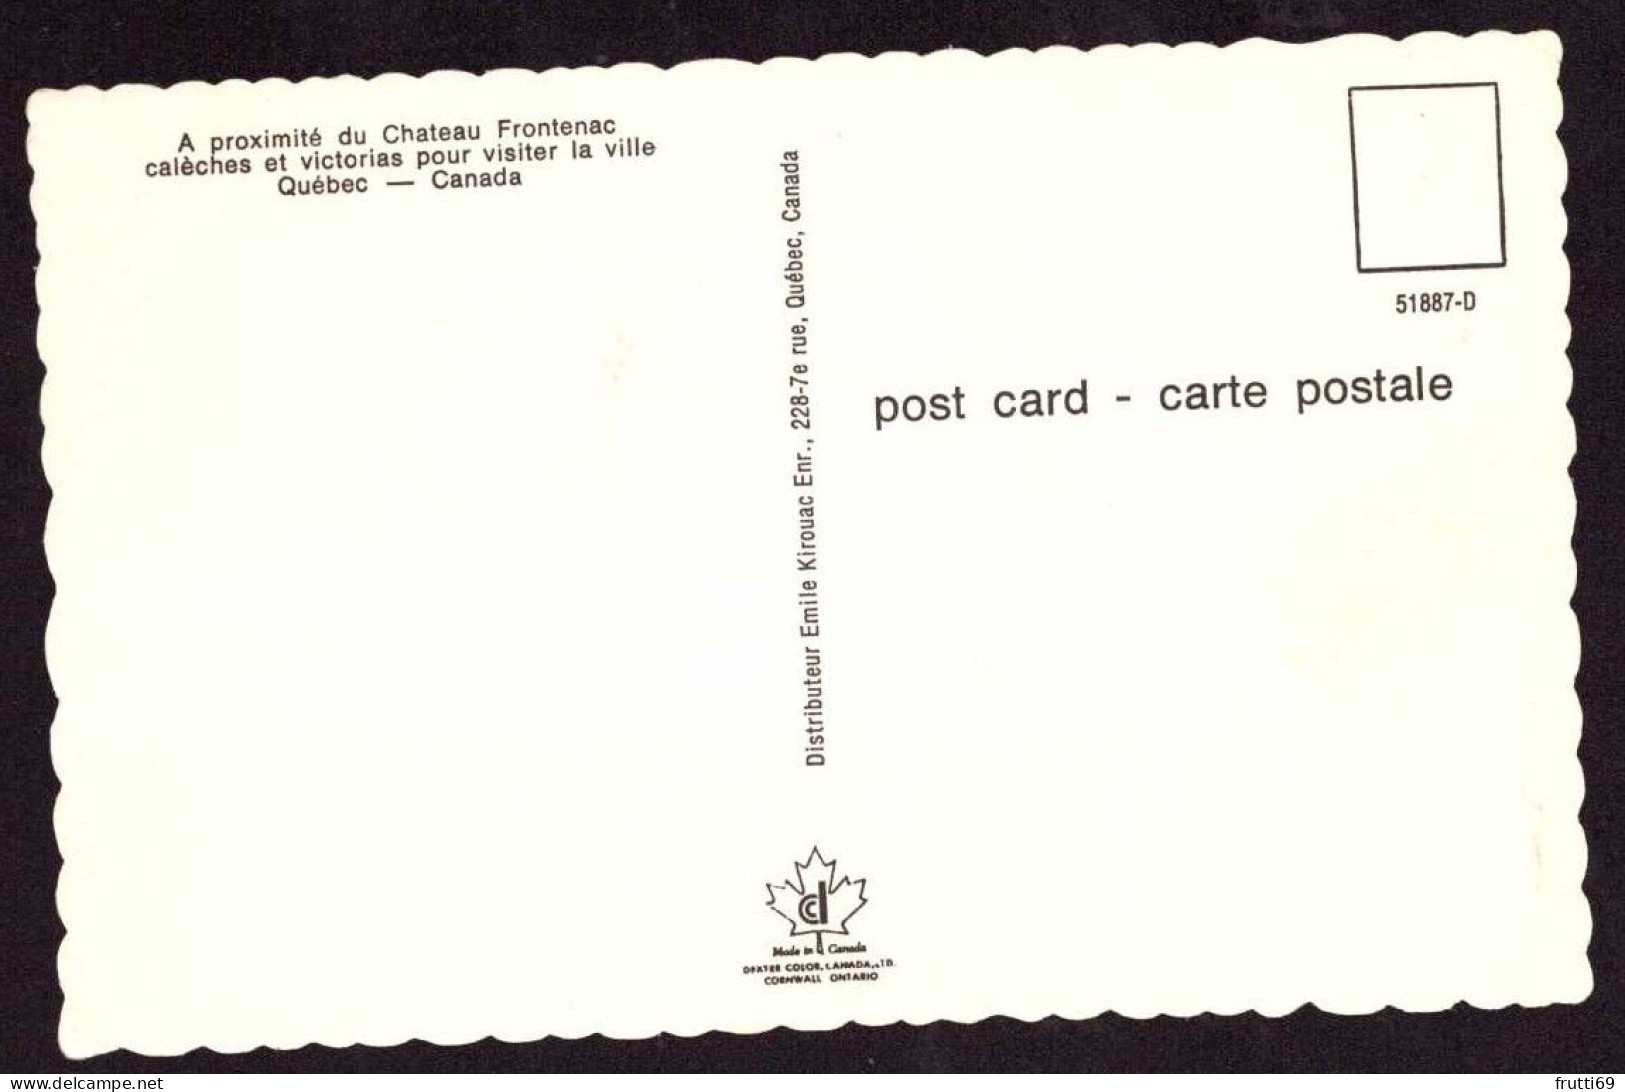 AK 125800 CANADA - Québec - A Proximité Du Chateau Frontenac - Québec - Château Frontenac